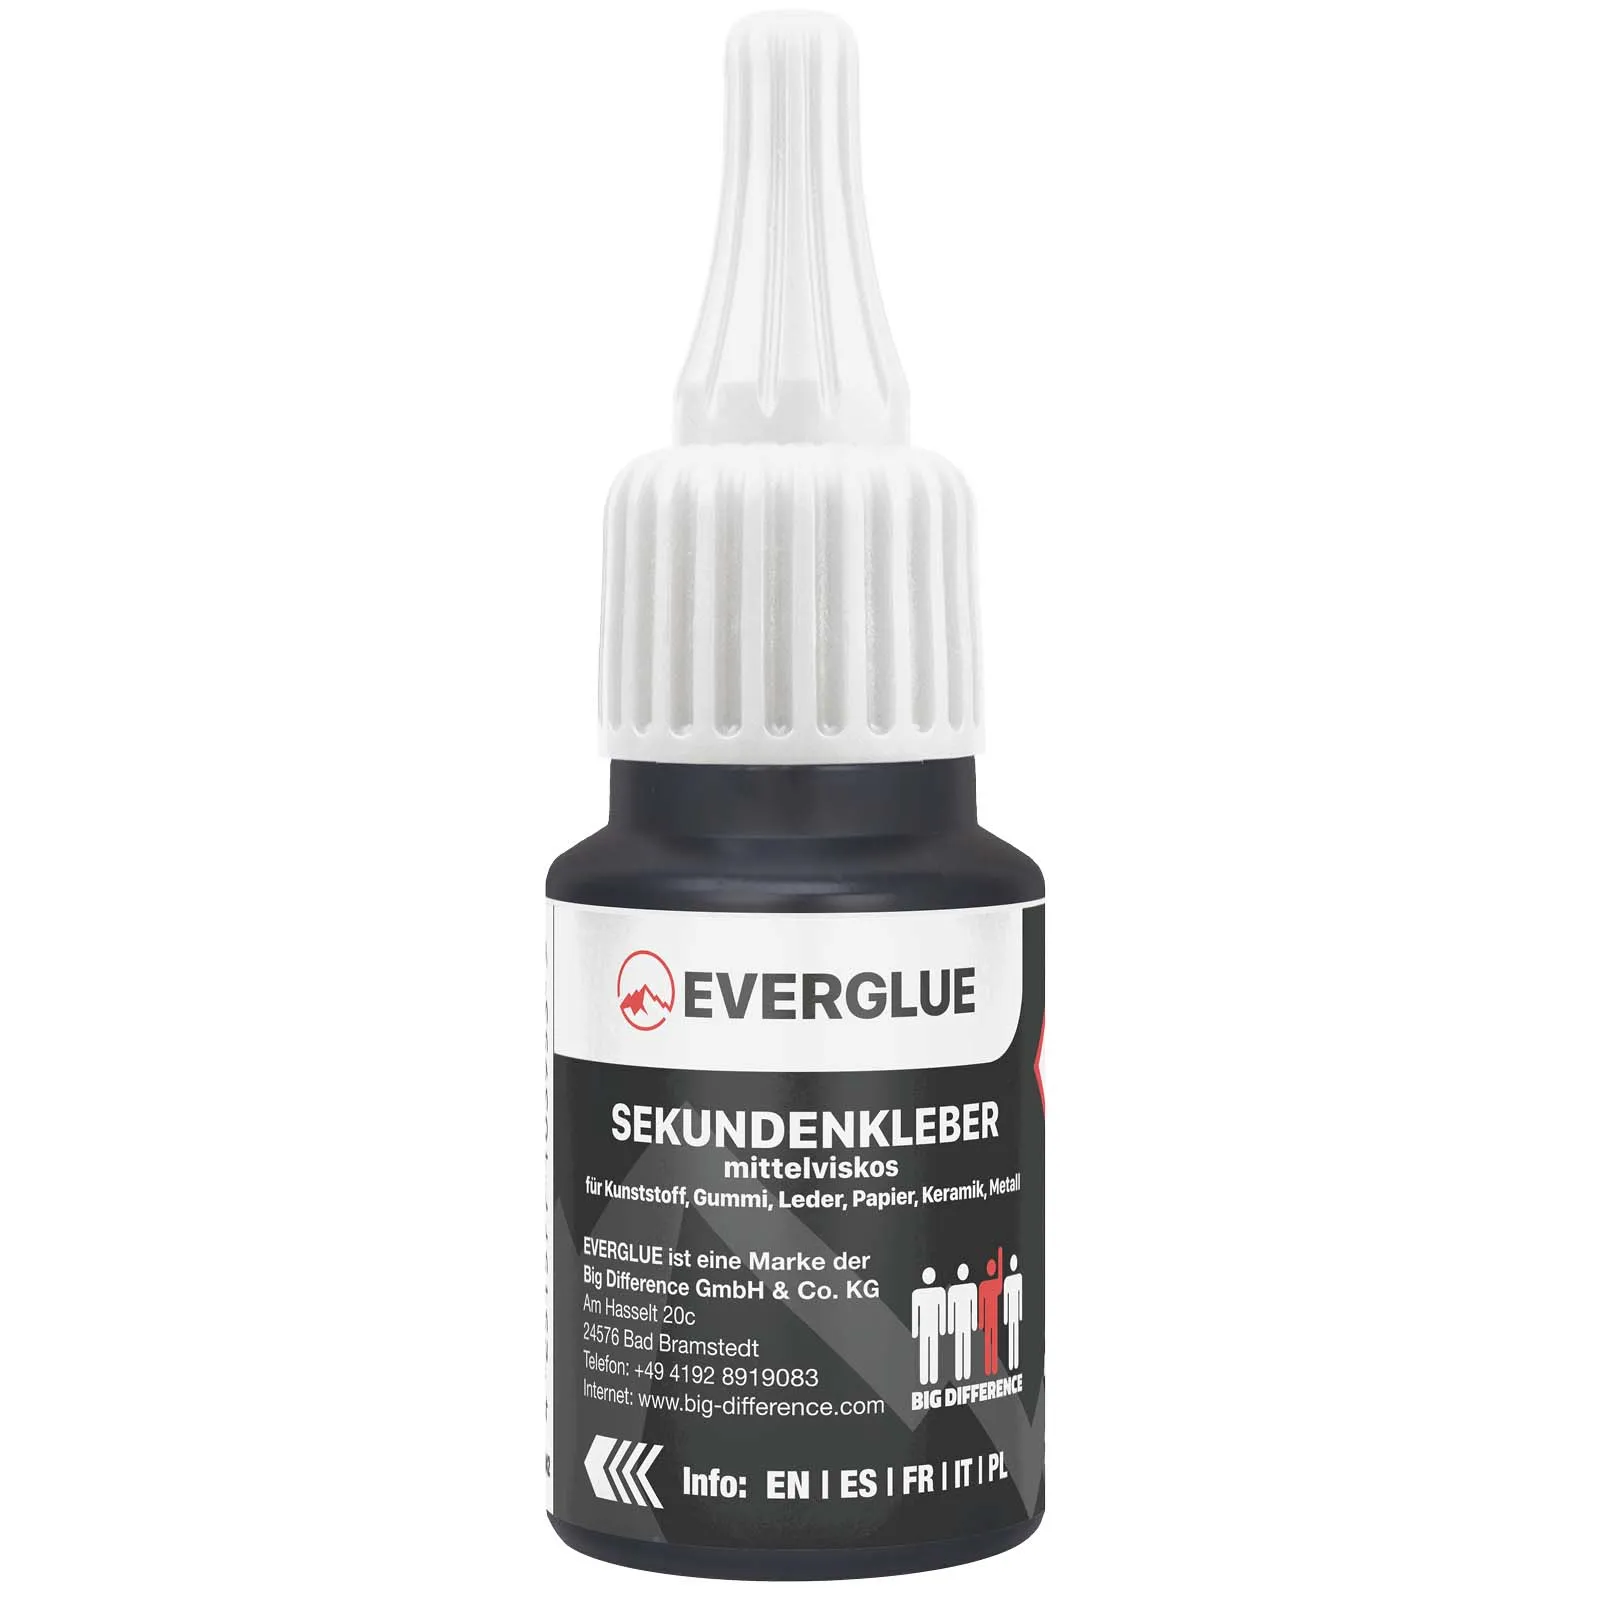 Everglue Sekundenkleber Cyanacrylat mittelviskos 20g Dosierflasche (mittelflüssig)